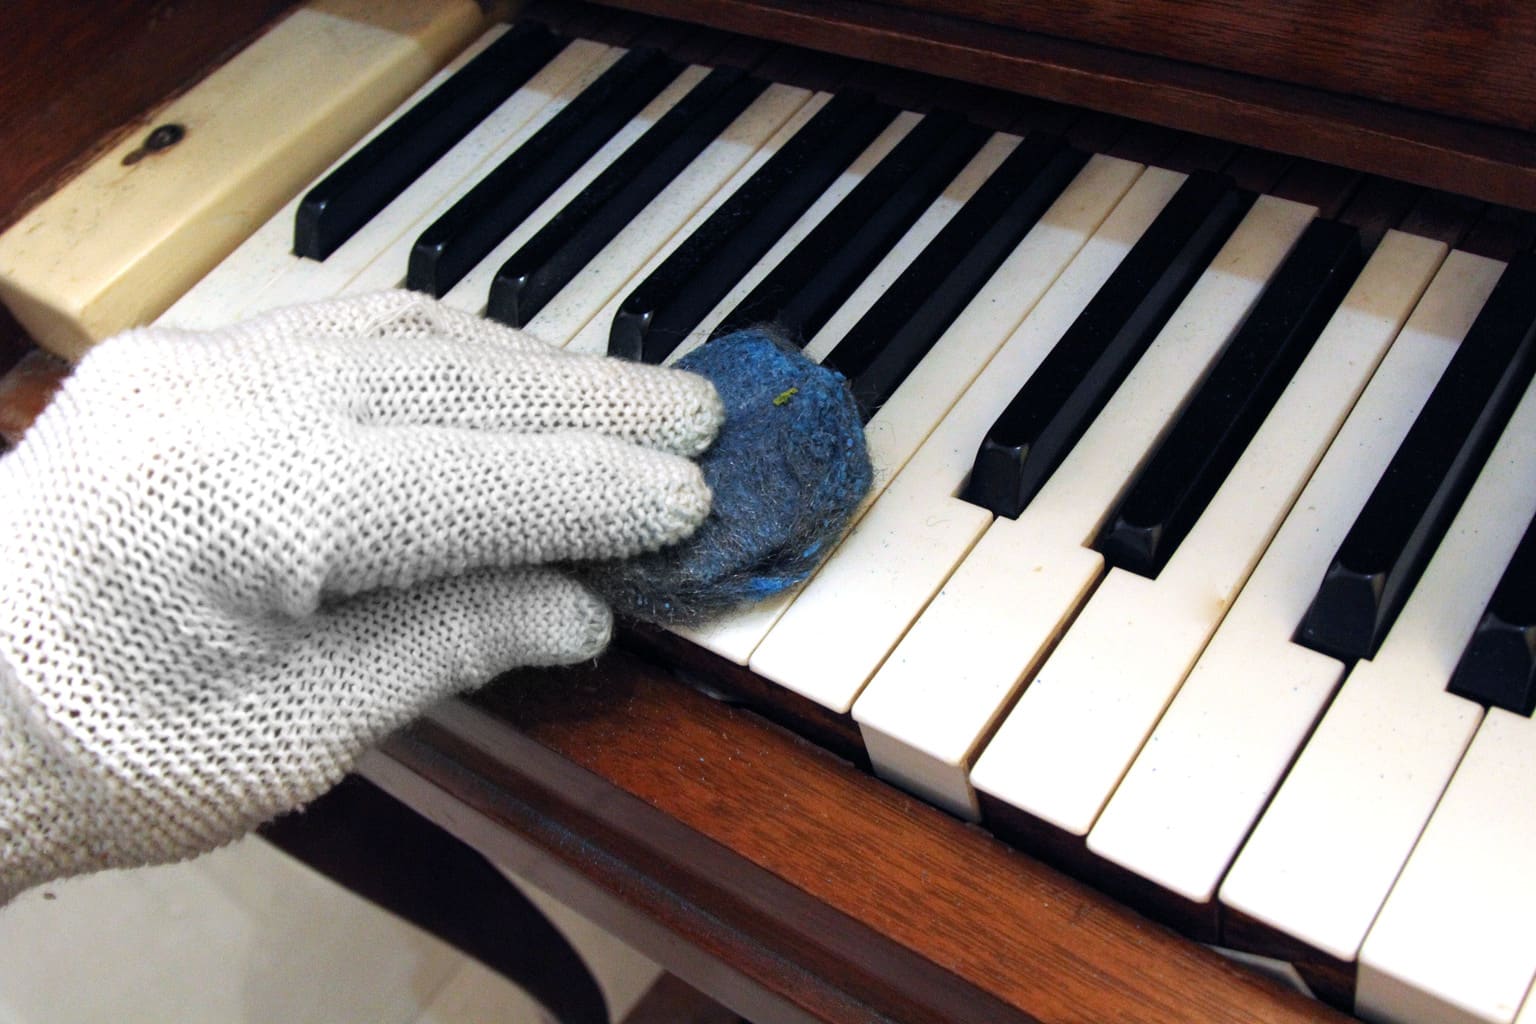  تمیز کردن کلیدهای پیانو